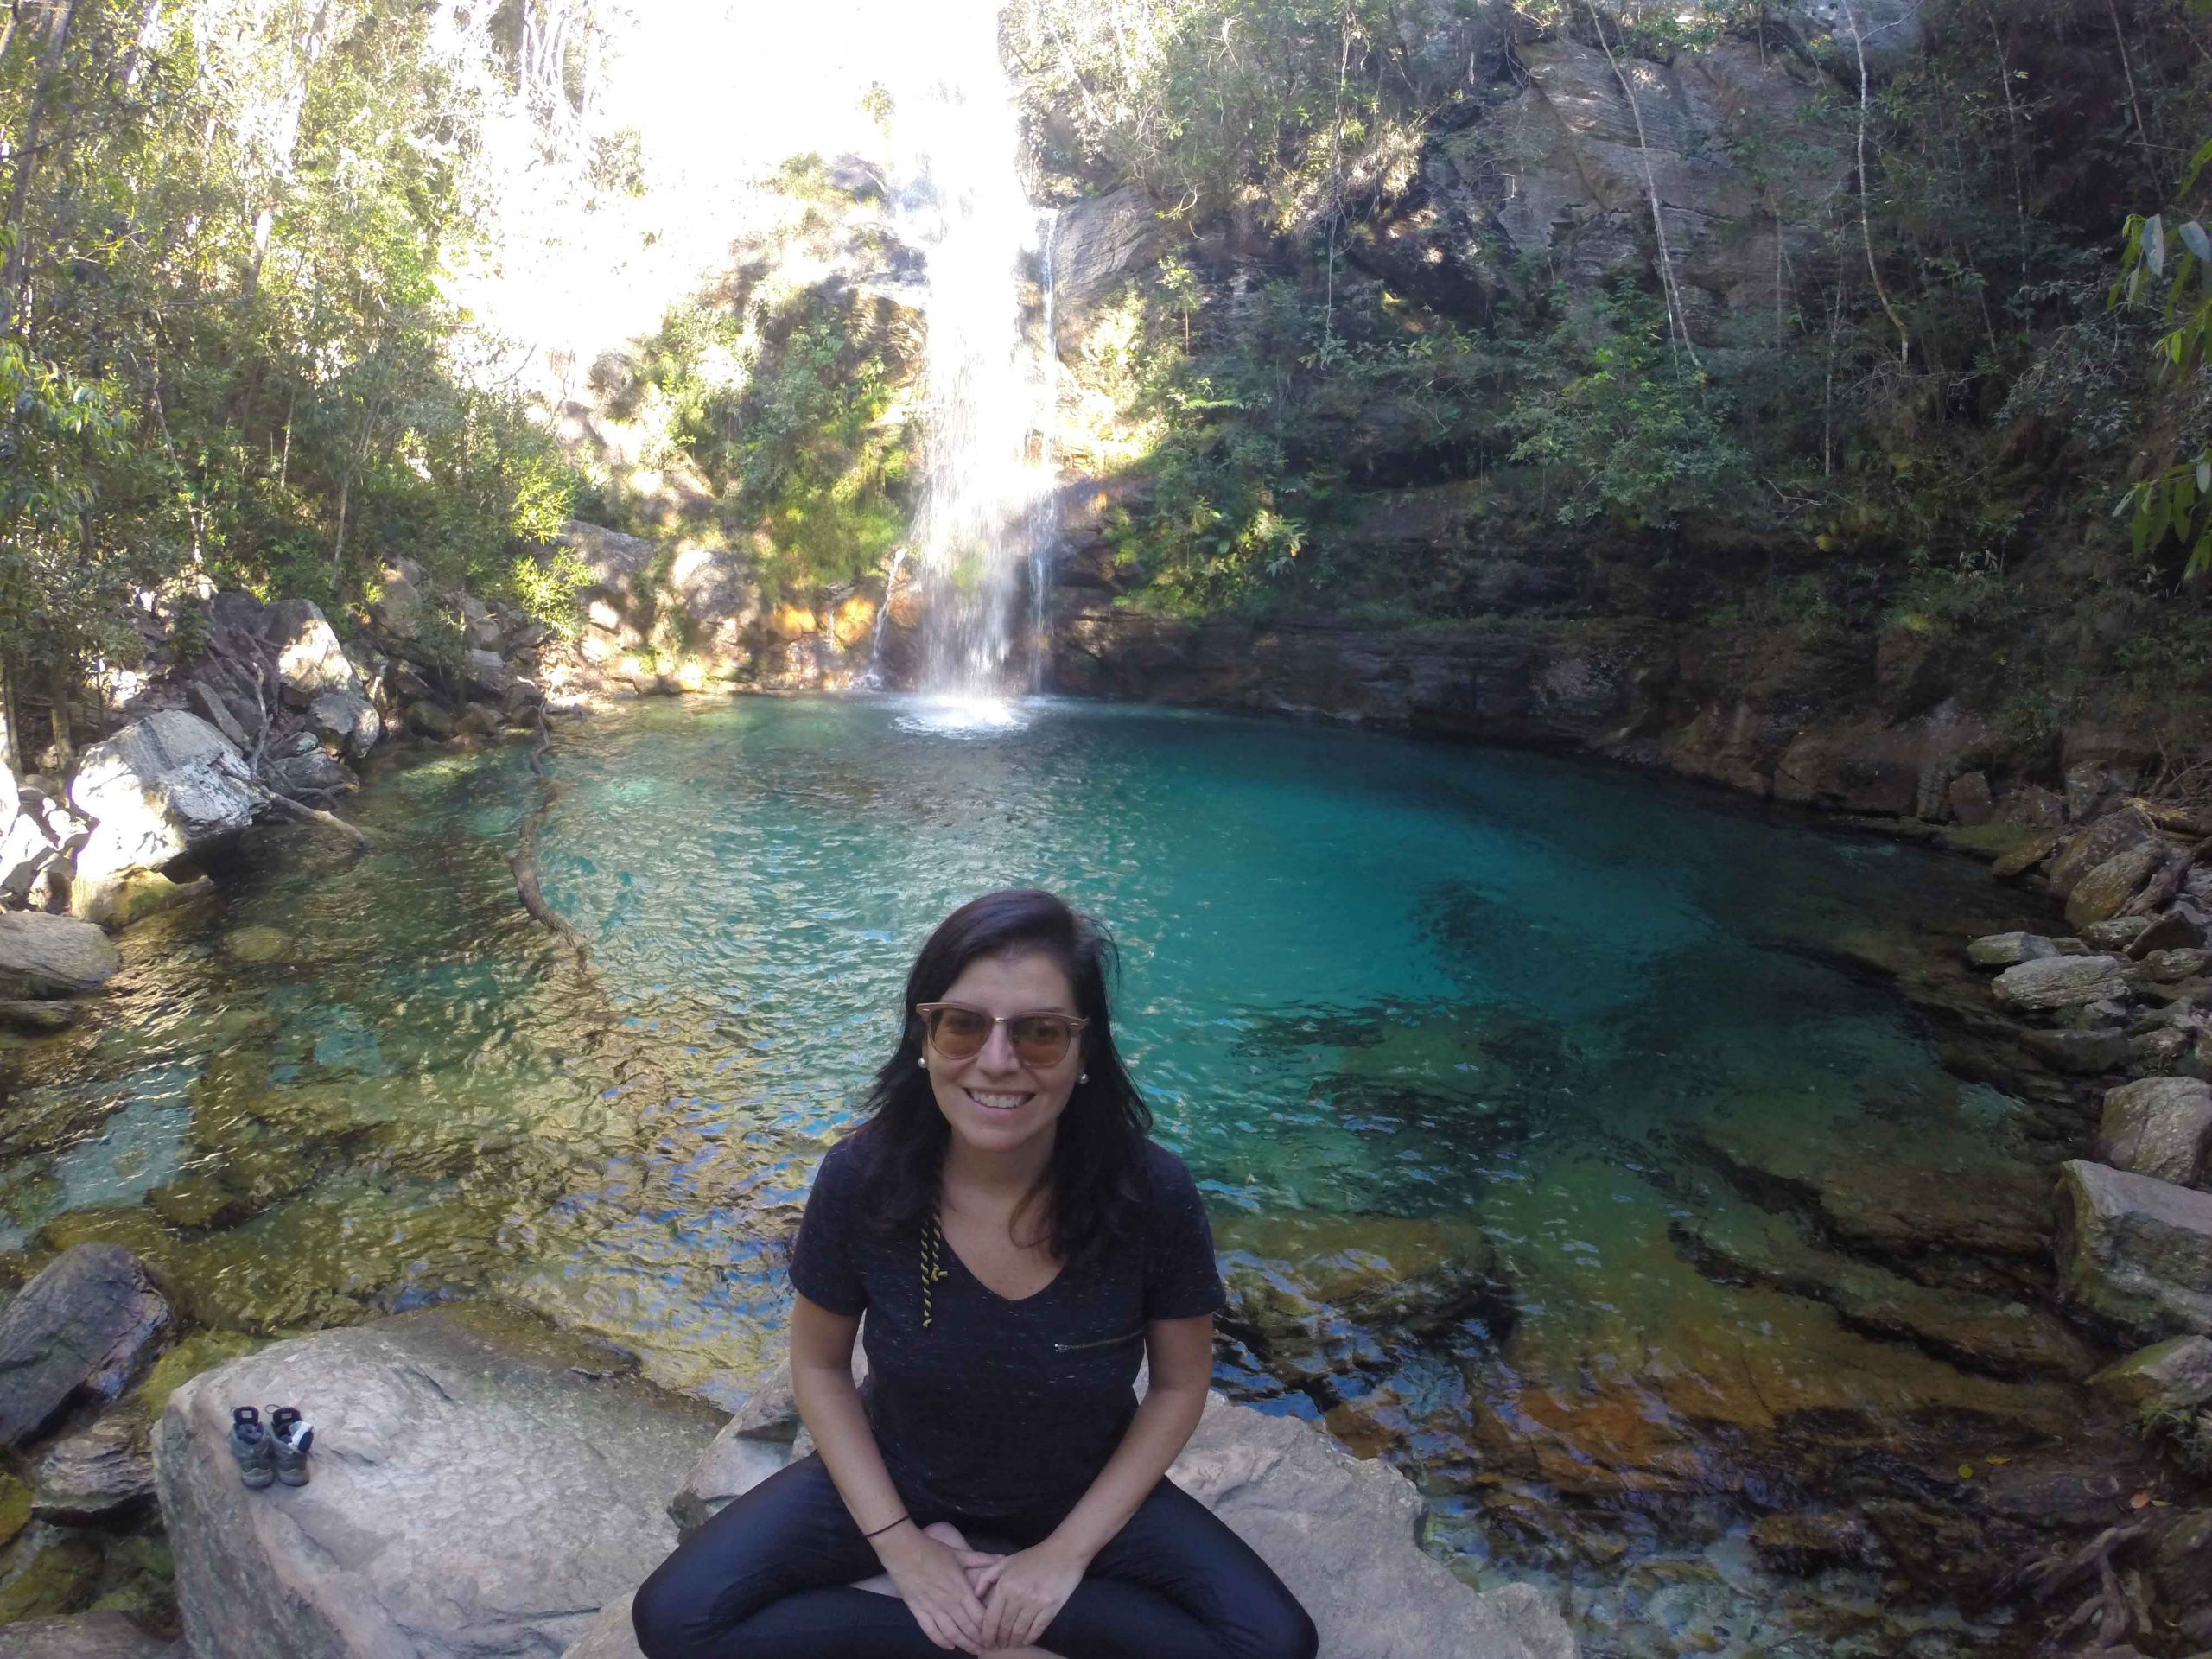 Dicas para conhecer a Cachoeira Santa Bárbara e sua linda piscina natural na Chapada dos Veadeiros.